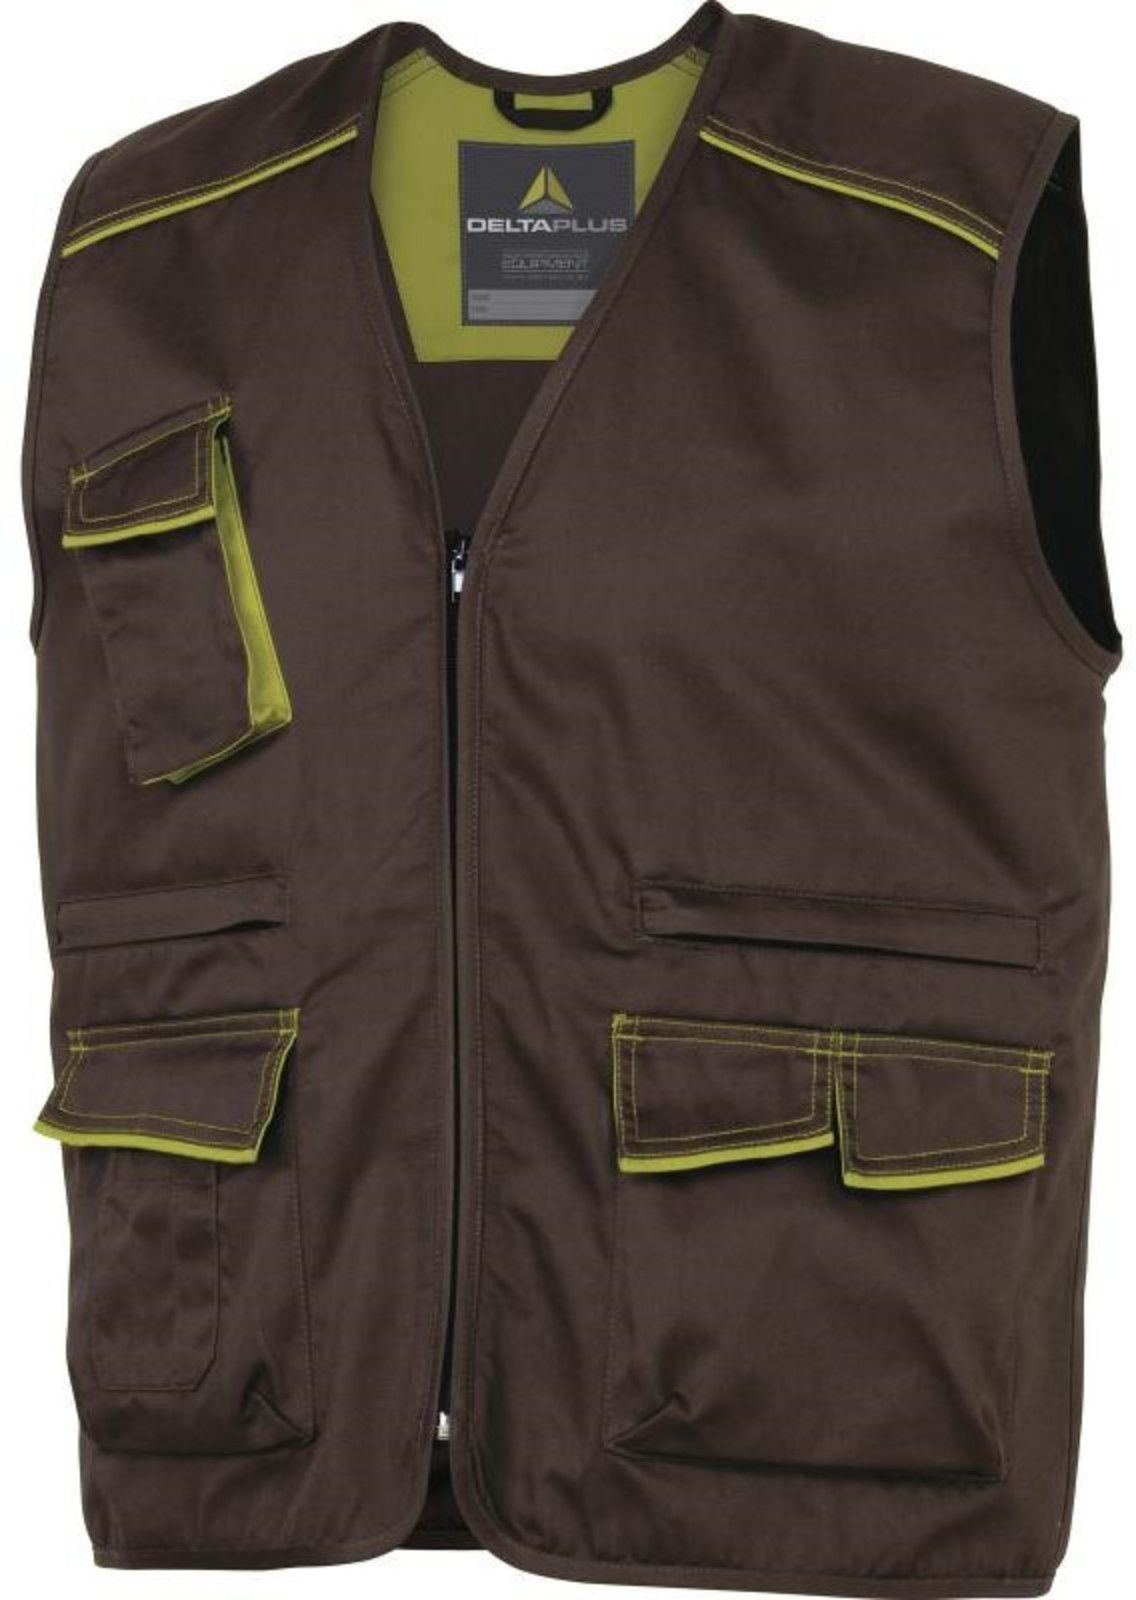 Pracovná vesta Delta Plus Panostyle M6gil  - veľkosť: XS, farba: hnedá/zelená